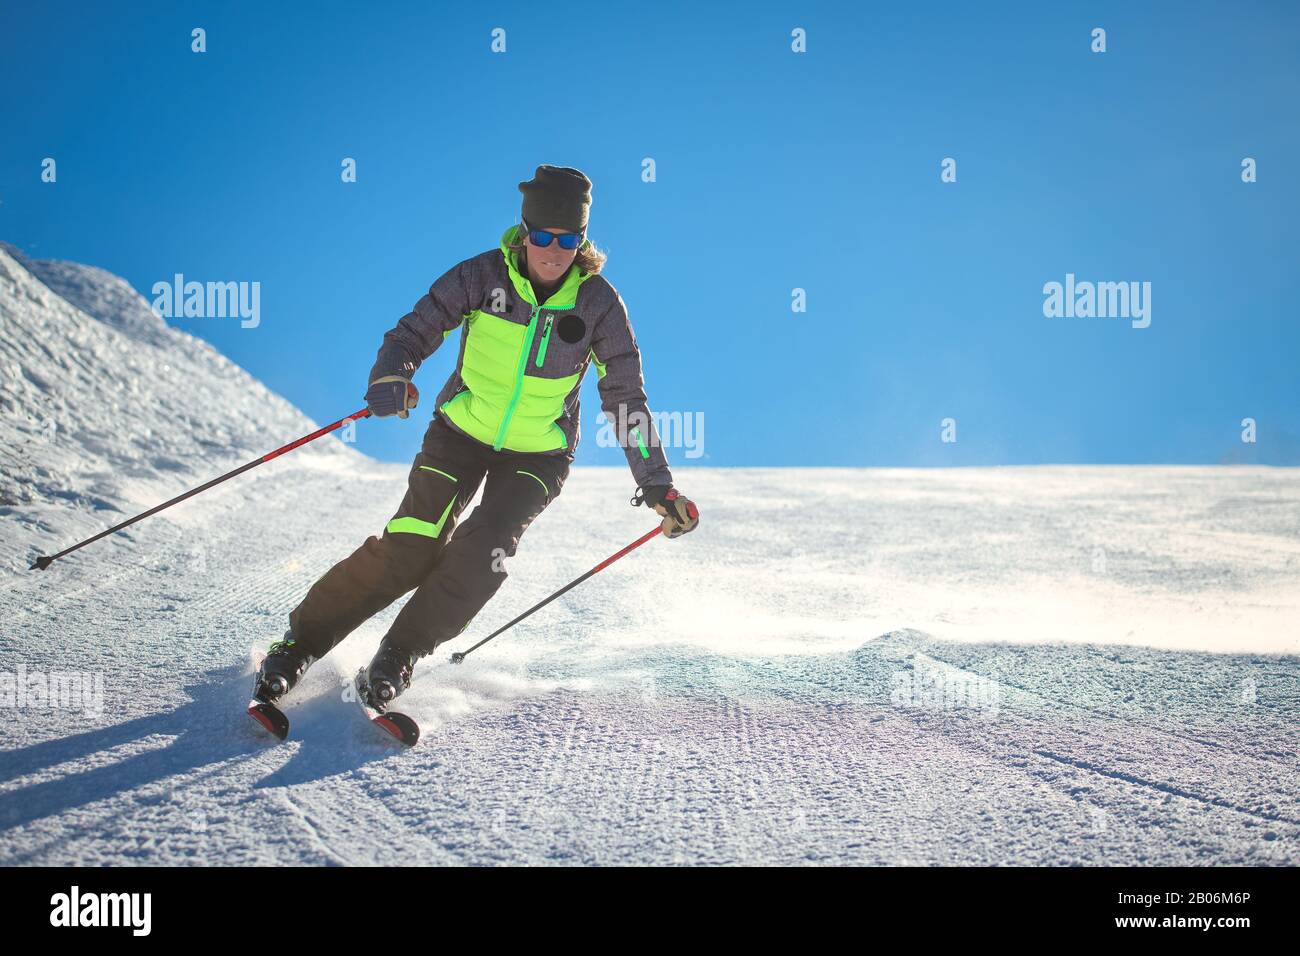 Skieur pratiquant le ski alpin sur la piste d'un domaine skiable Banque D'Images